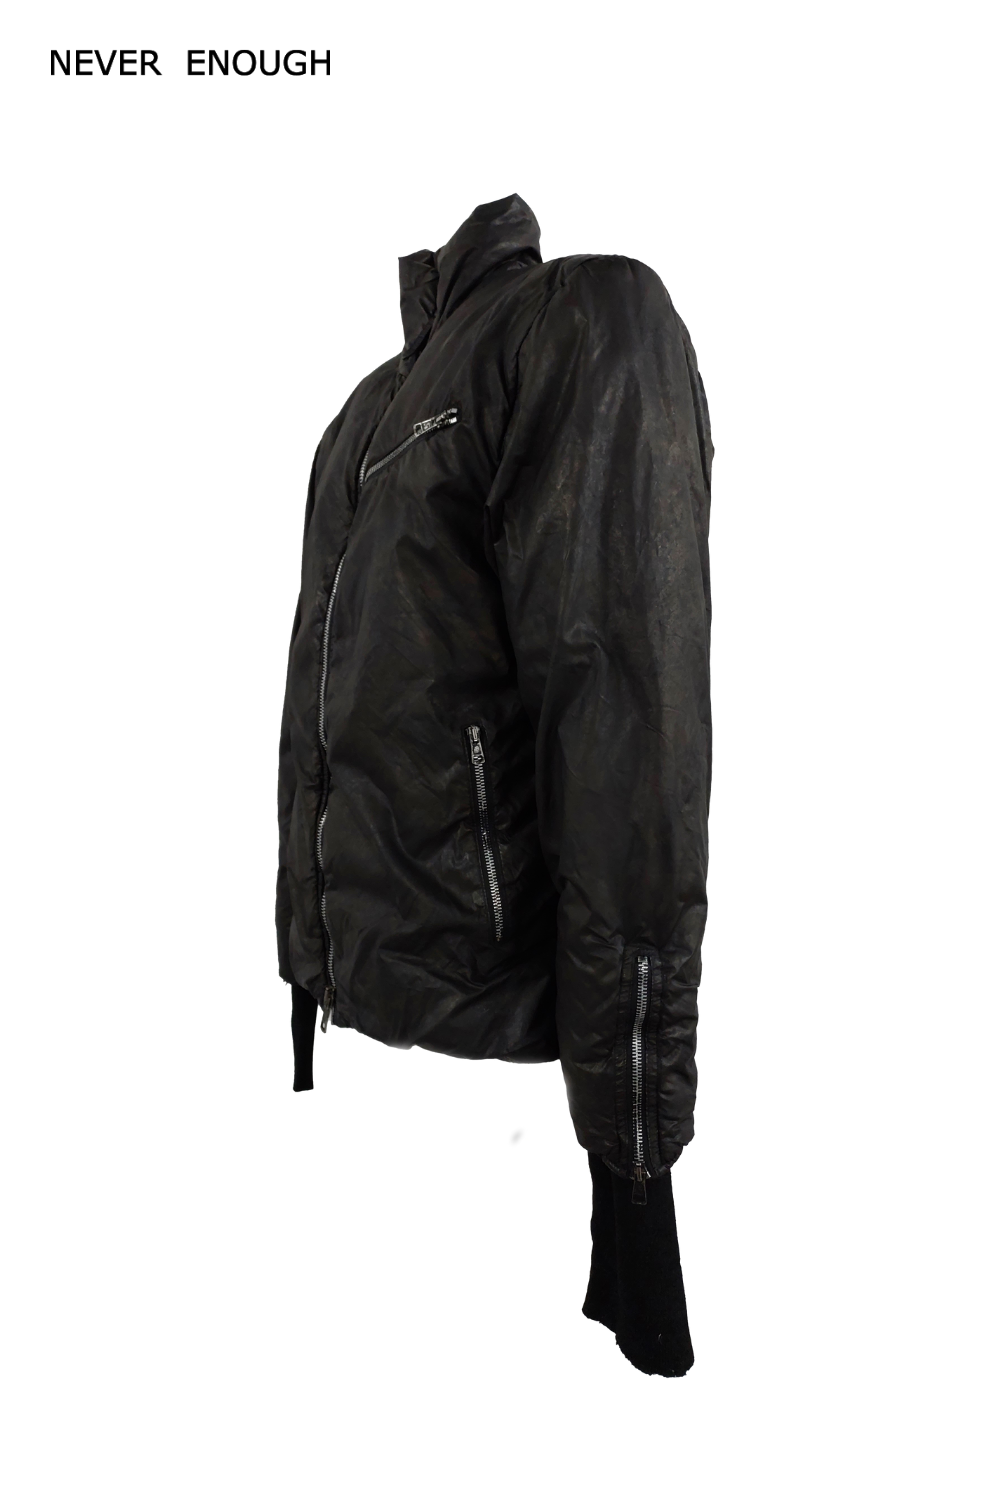 Man jacket MJA022